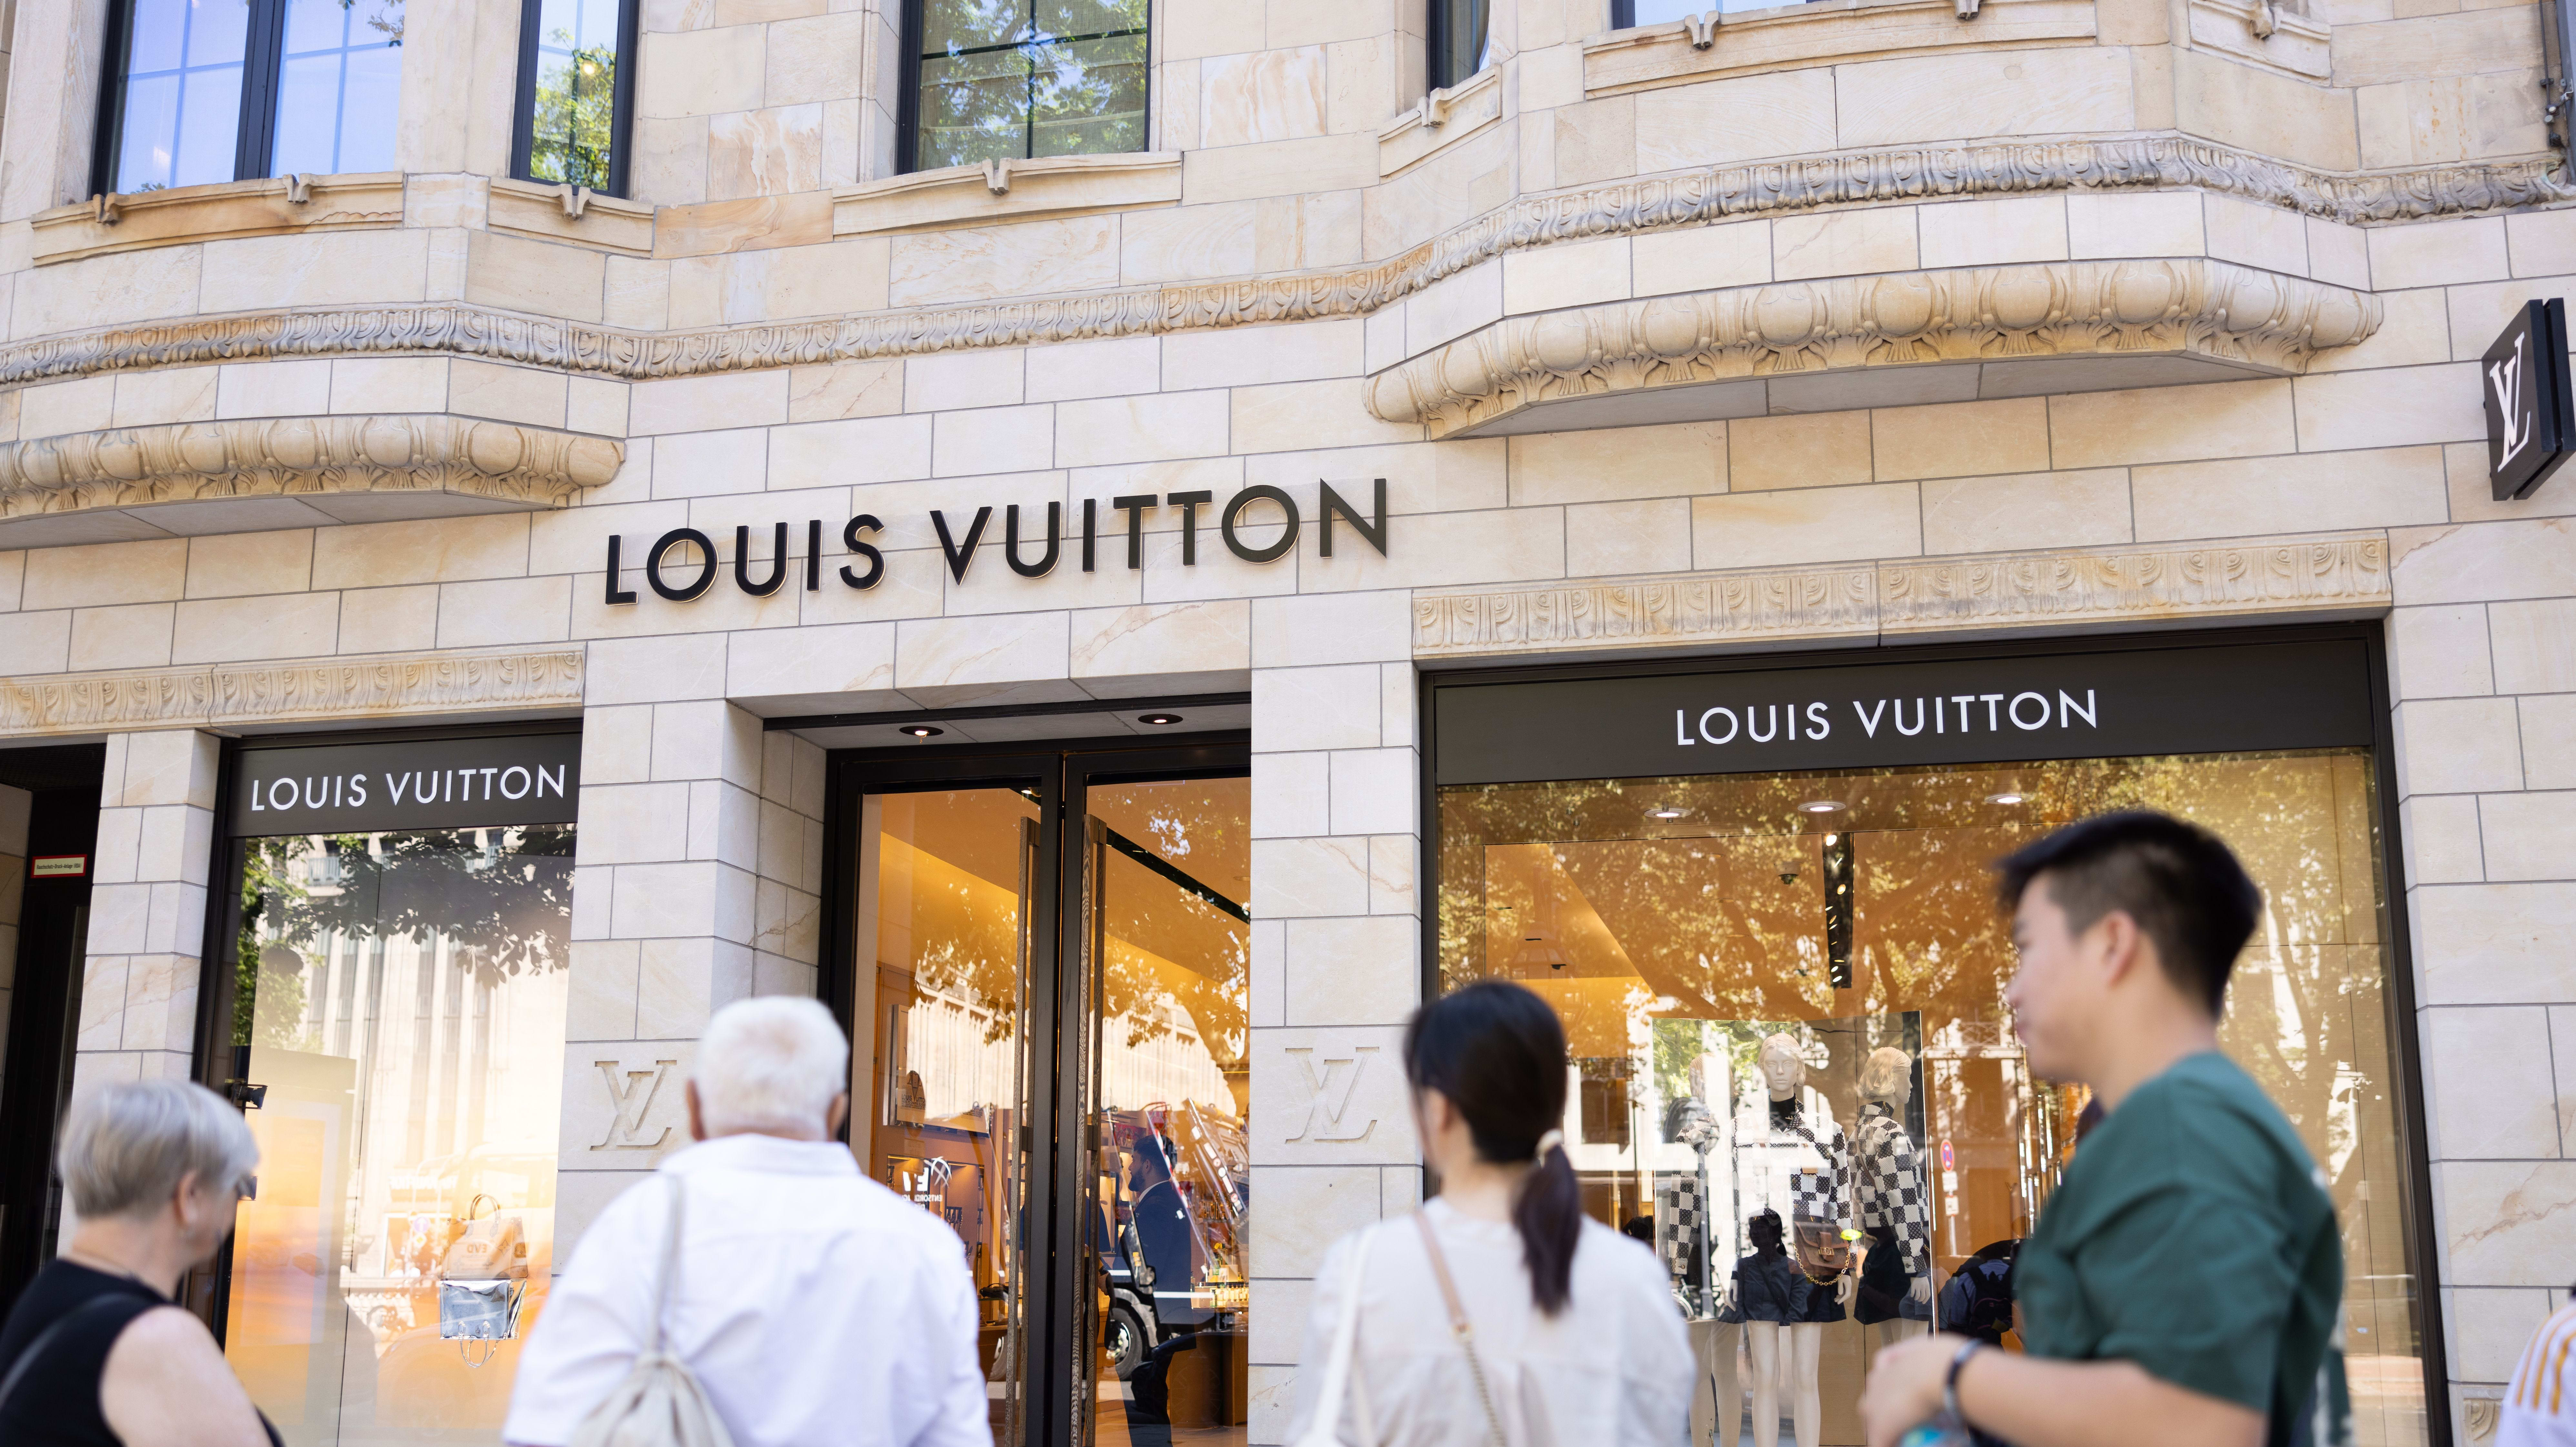 Kering vs. LVMH: Head-to-Head in Luxury Retail